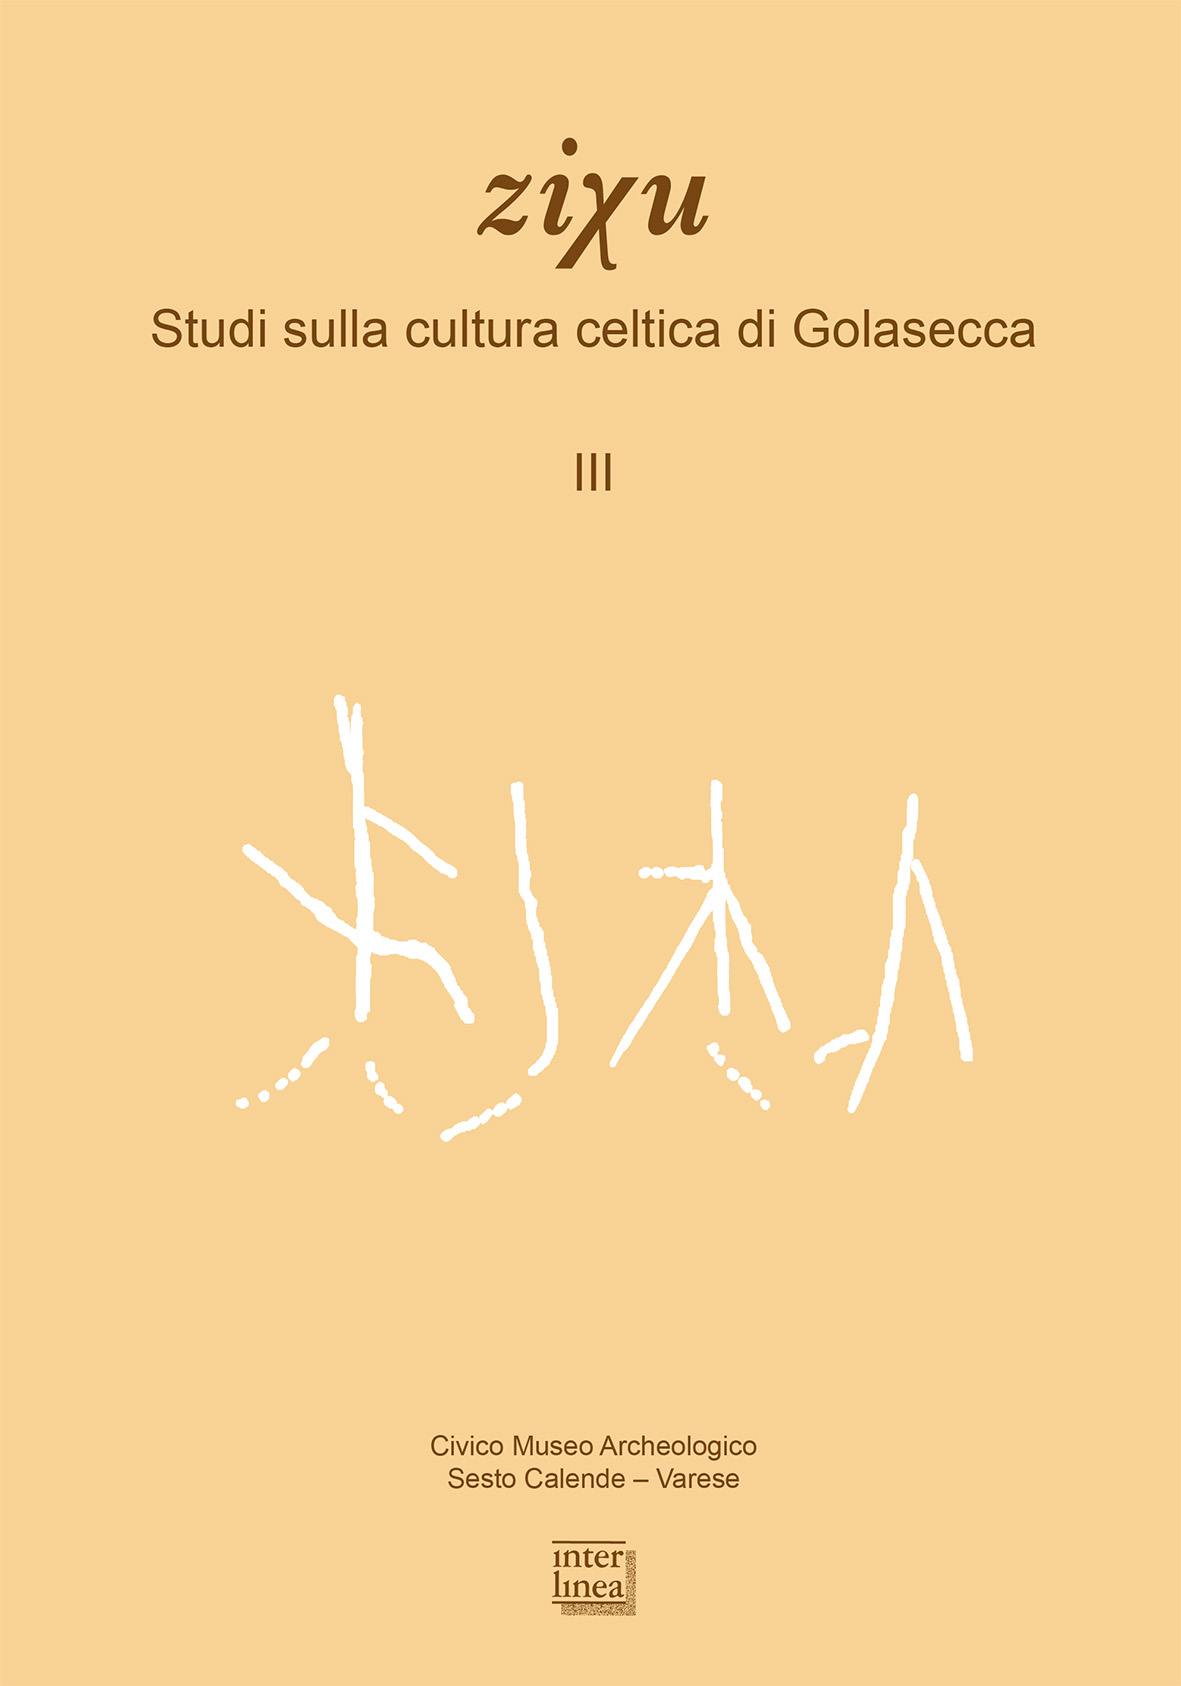 Artikel, Nuovi dati del Golasecca III A dal nuovo Polo Umanistico dell'Università degli Studi di Bergamo, Interlinea